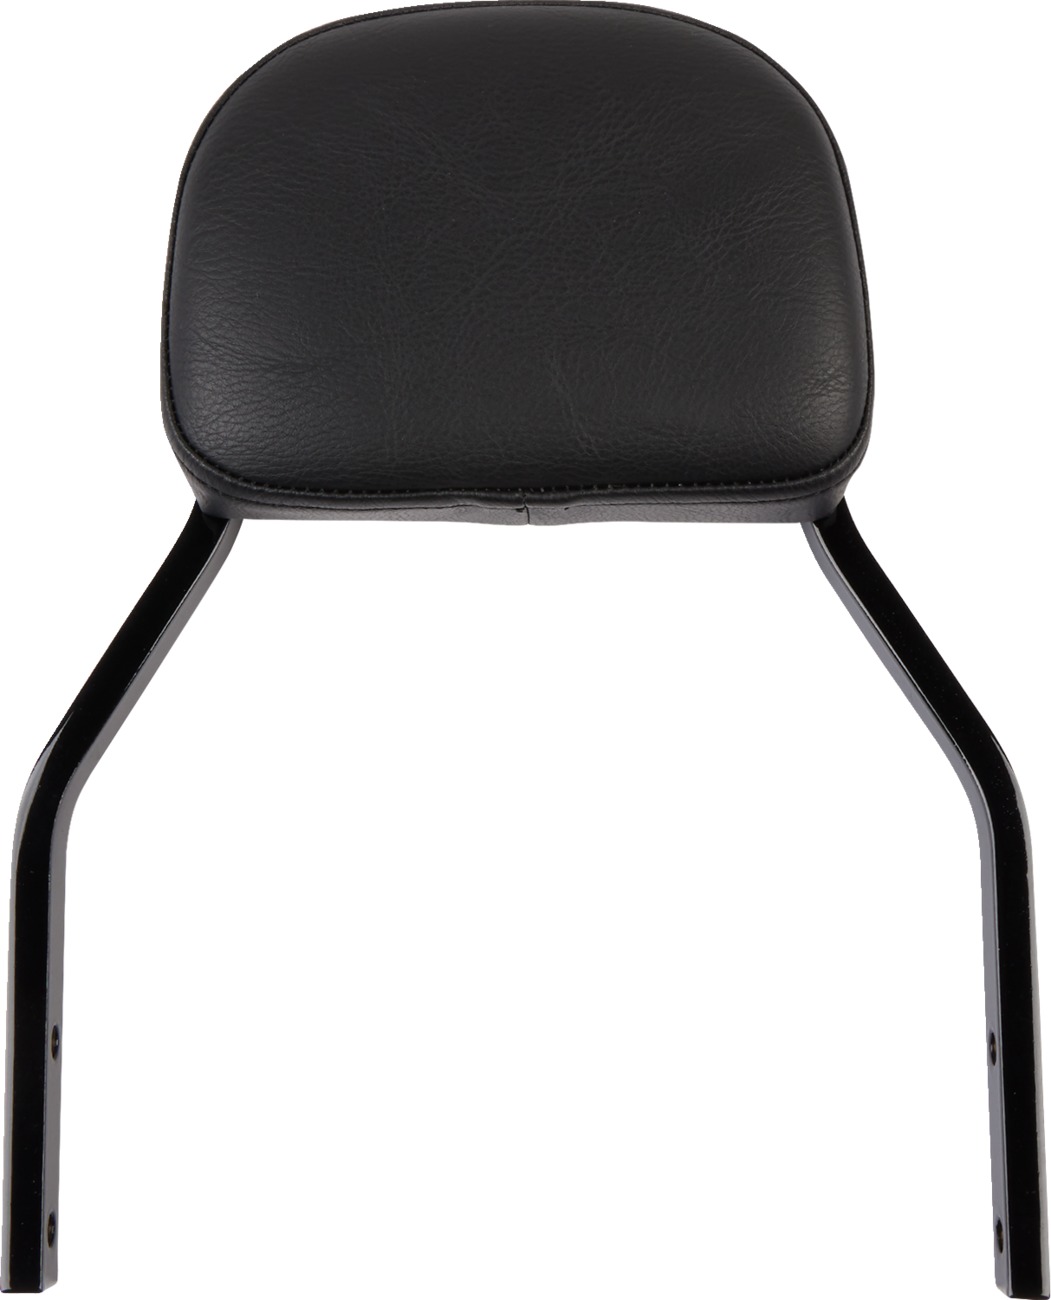 Detachable Backrests - Detachable Bckrst Mini Sqr Blk - Click Image to Close